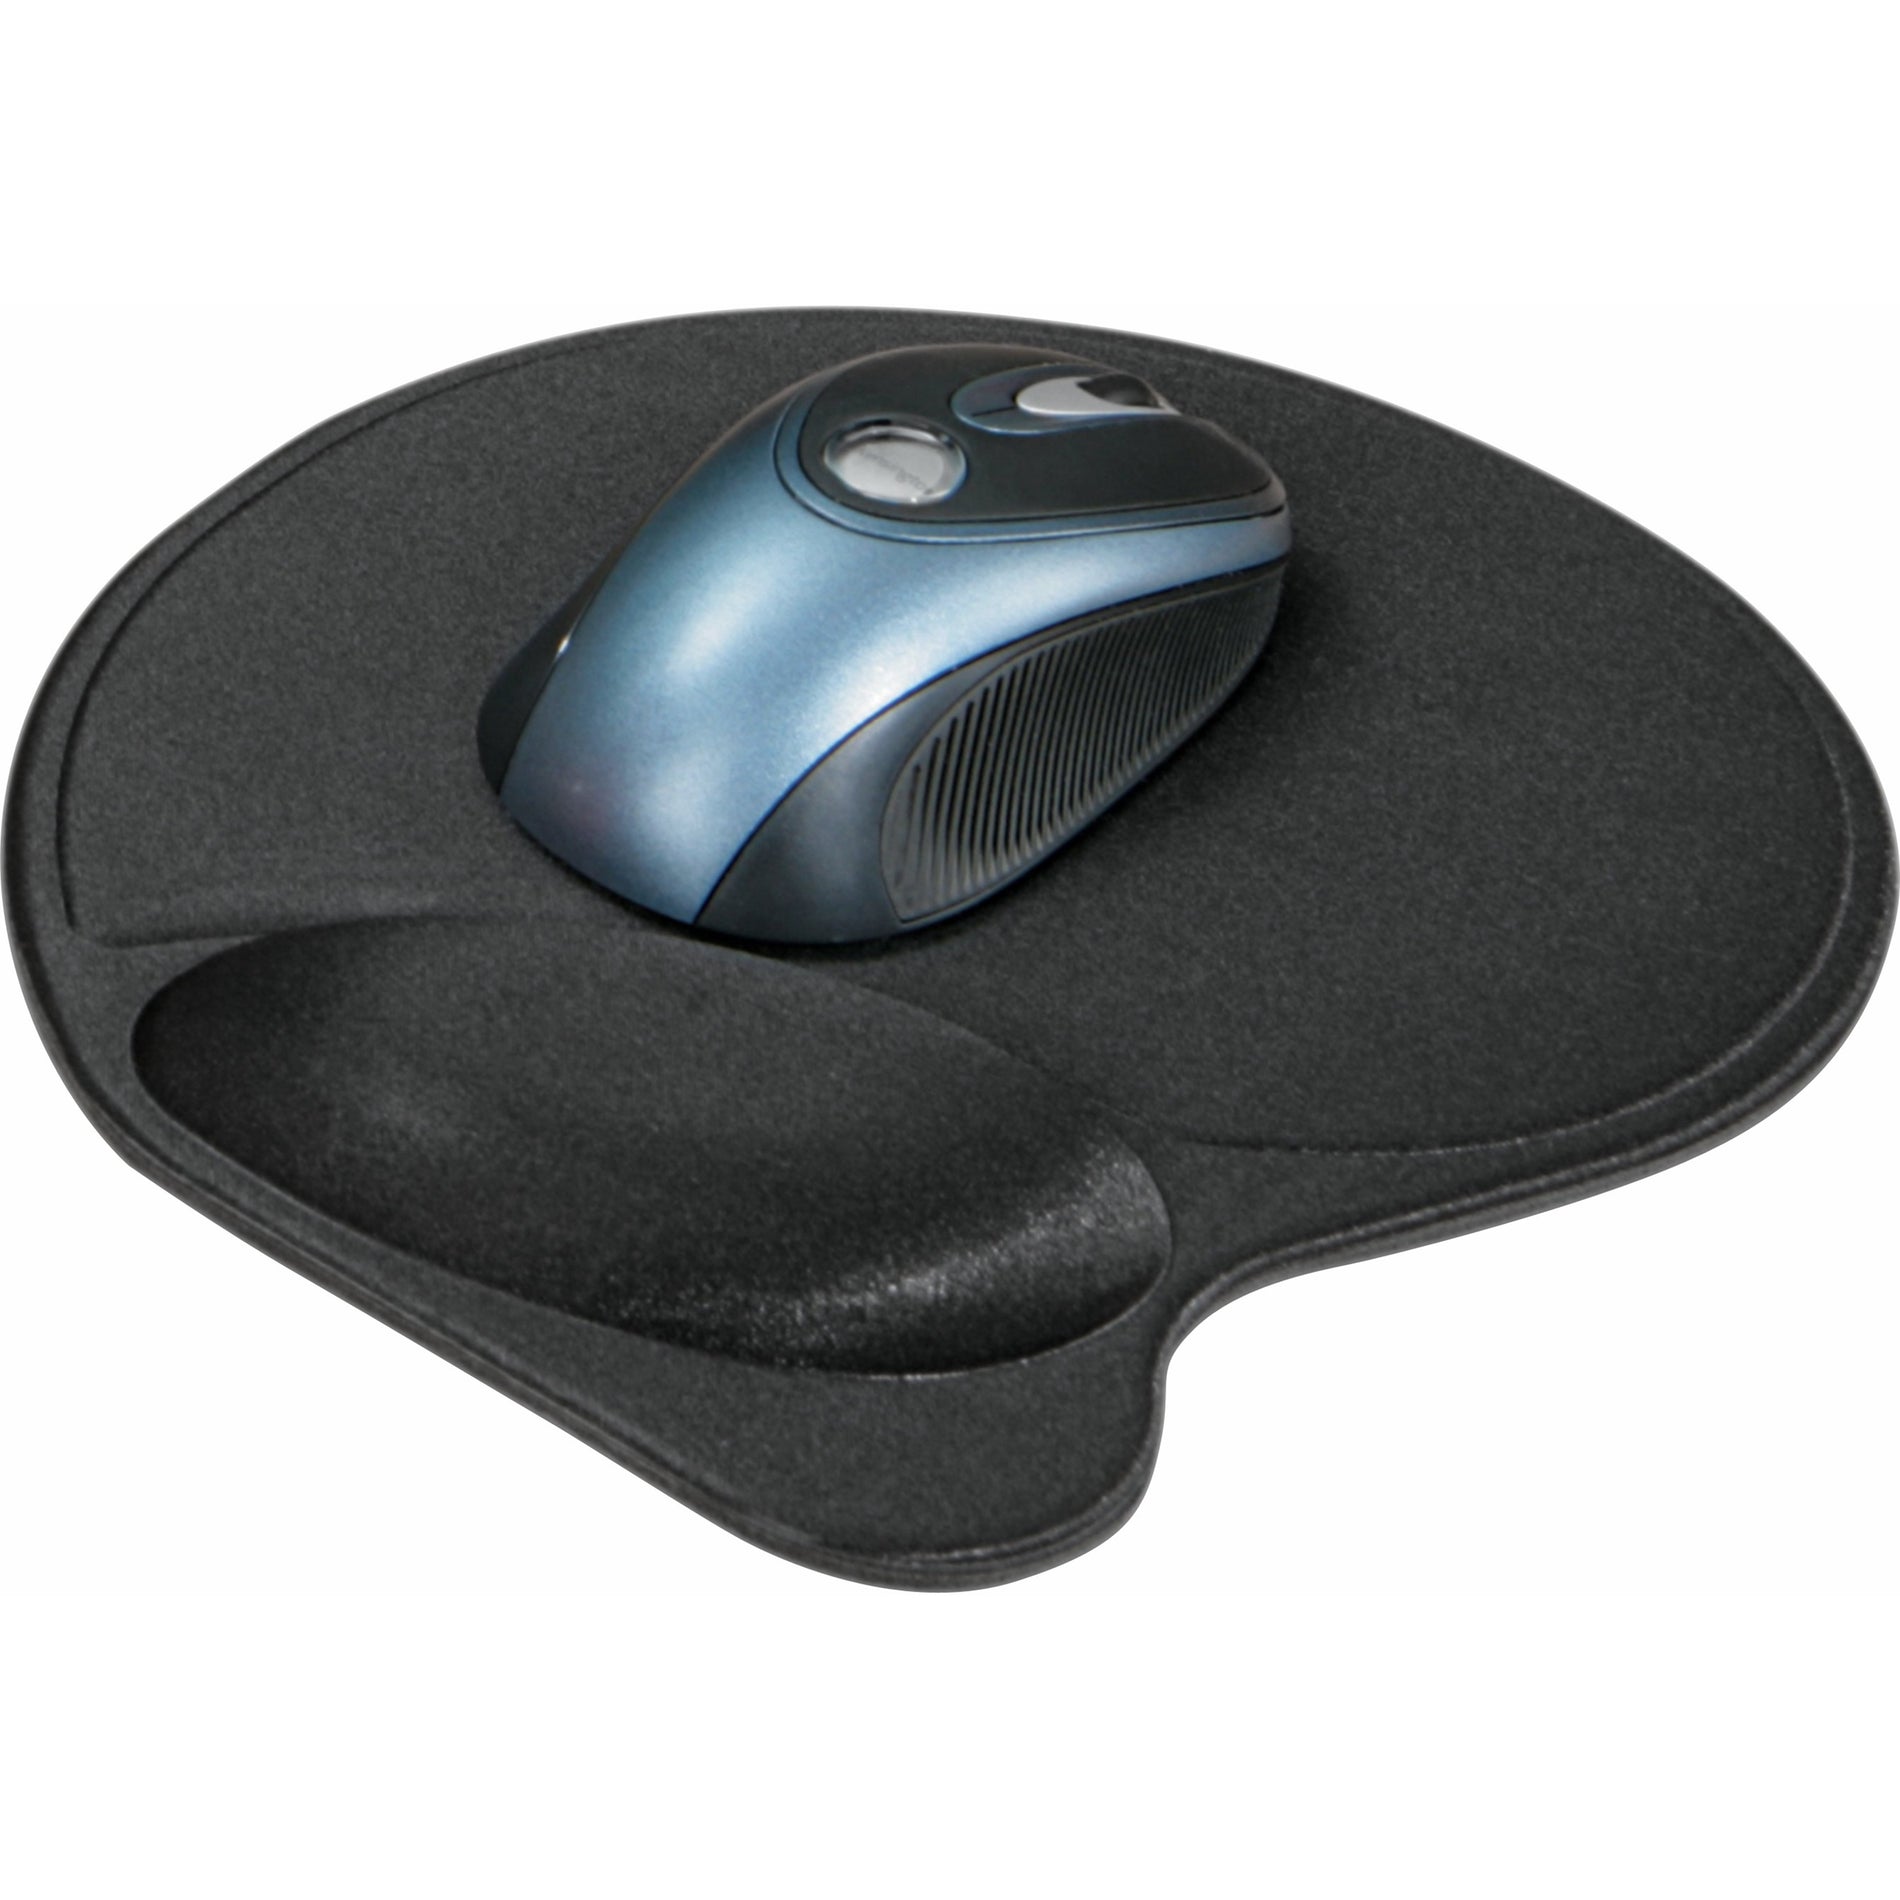 Kensington L57822US Wrist Pillow Mouse Wrist Rest - Black, Non-skid Base, Durable